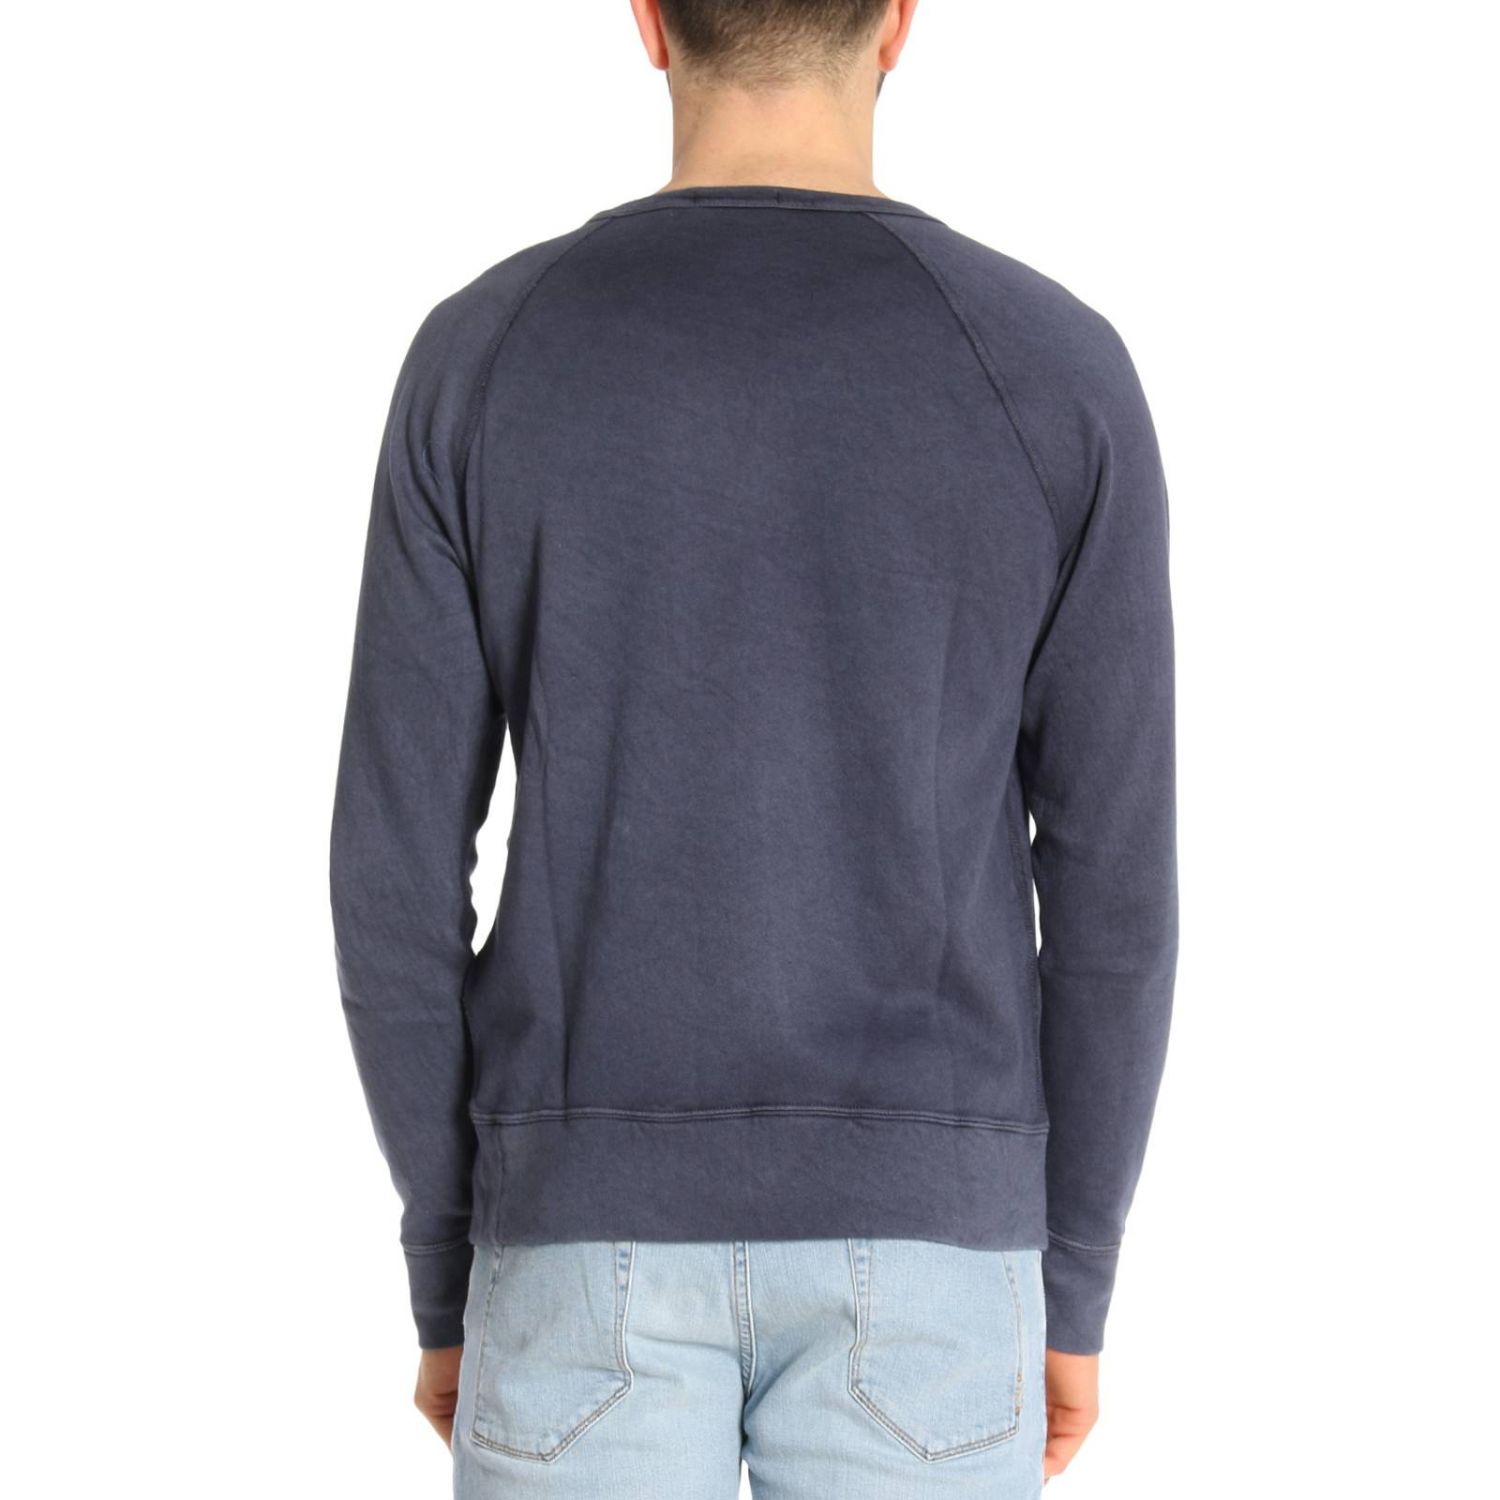 Polo Ralph Lauren Outlet: Sweatshirt men | Sweatshirt Polo Ralph Lauren ...